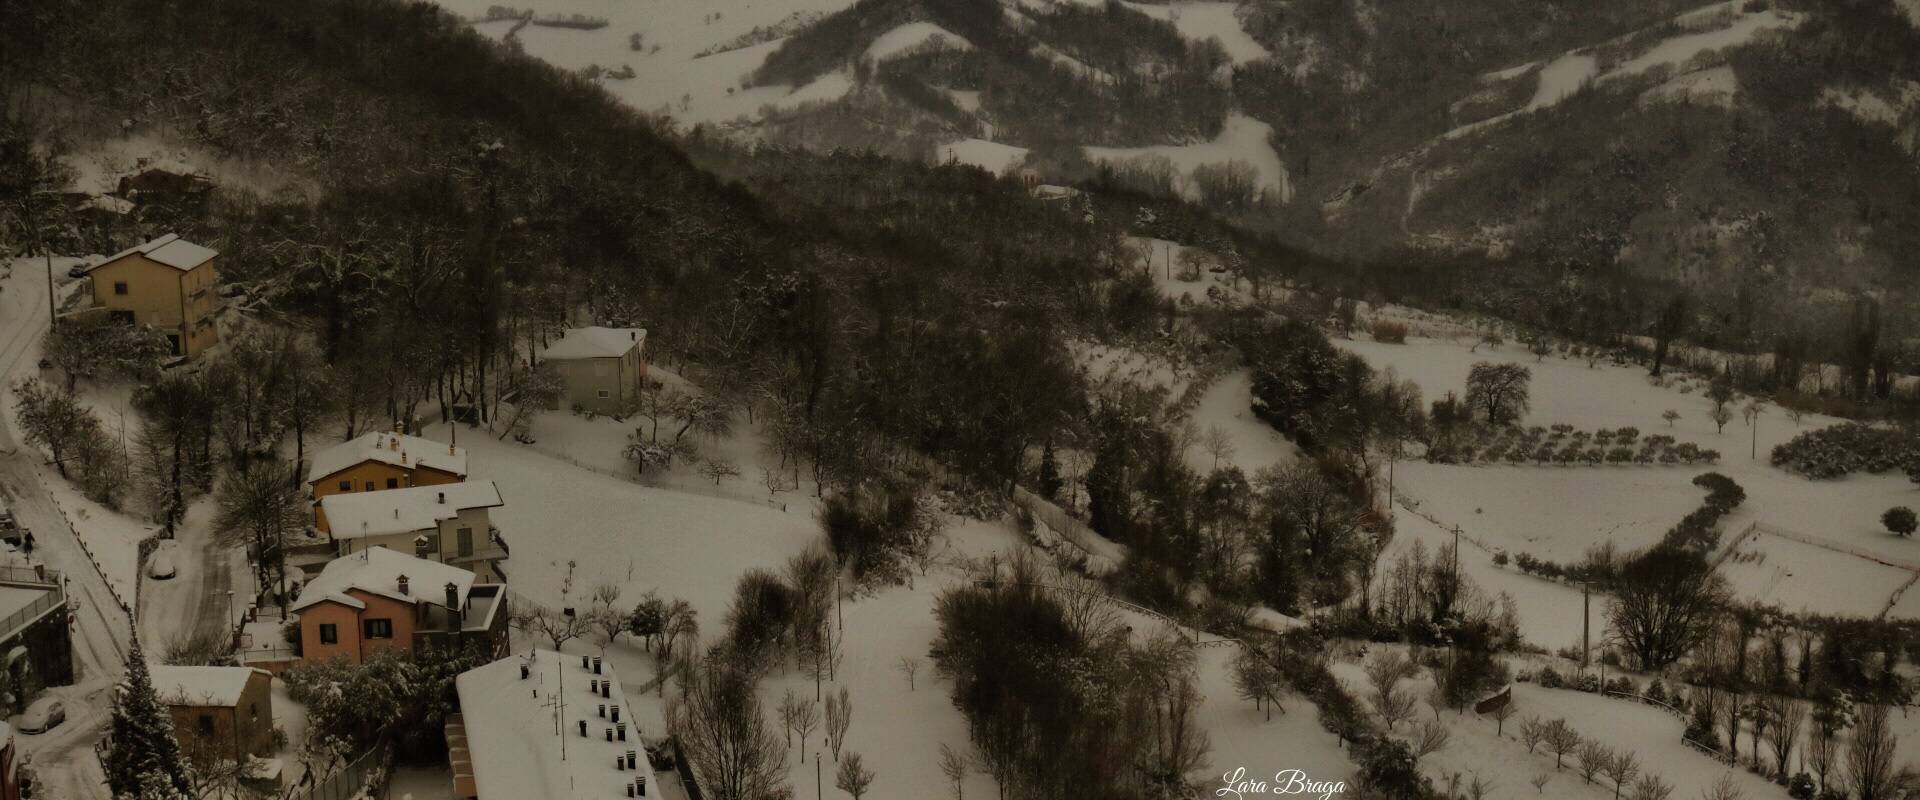 La Rocca e la neve5 foto di Larabraga19